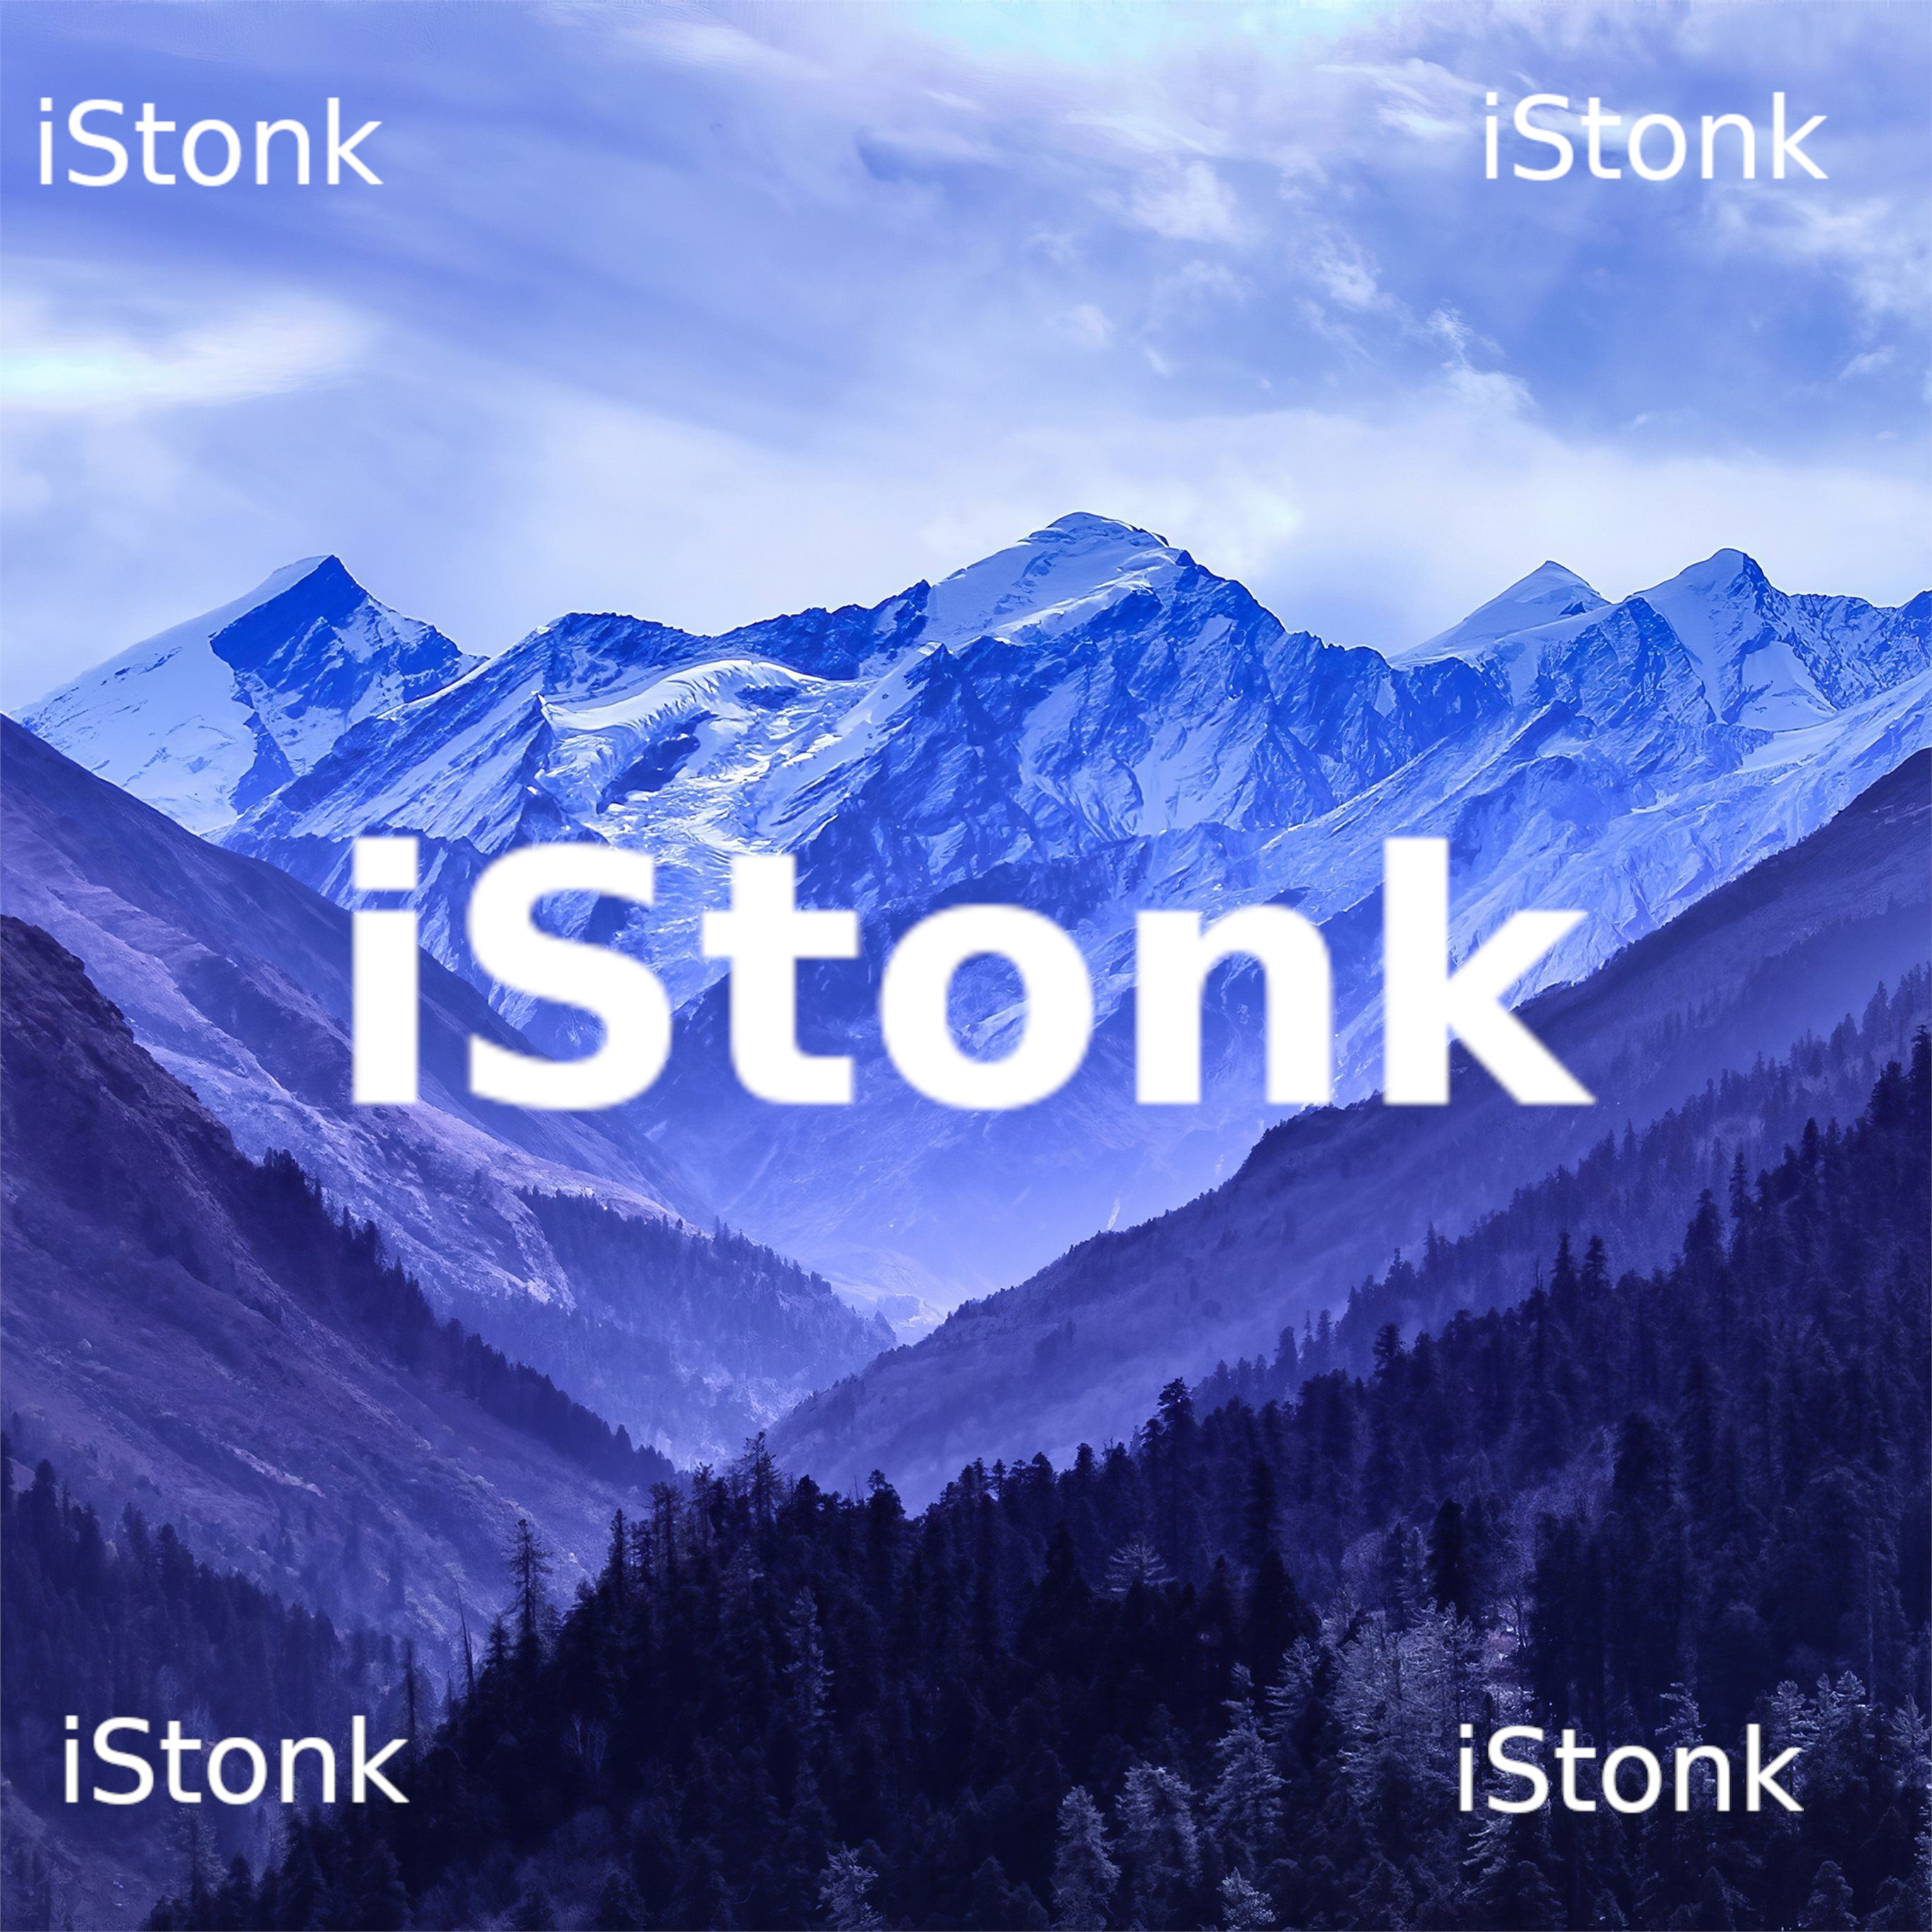 iStonk logo failed to load